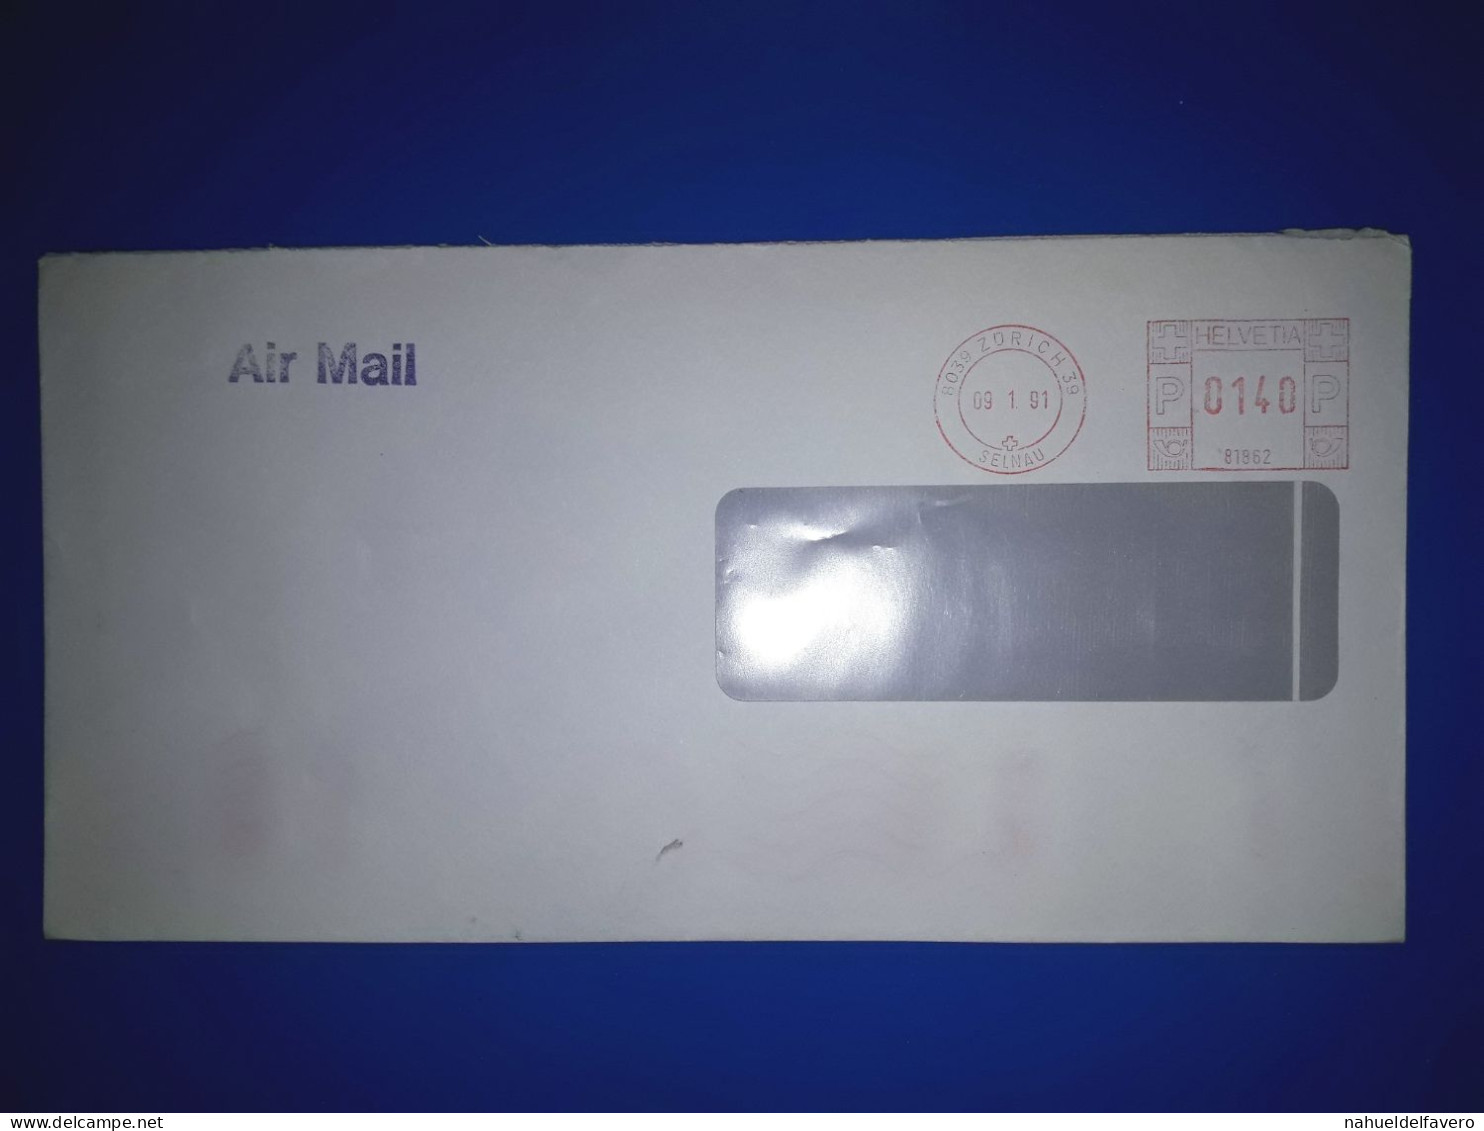 HELVETIA, Enveloppe Prioritaire Circulée Par Avion Avec Affranchissement Mécanique. Année 1991. - Used Stamps